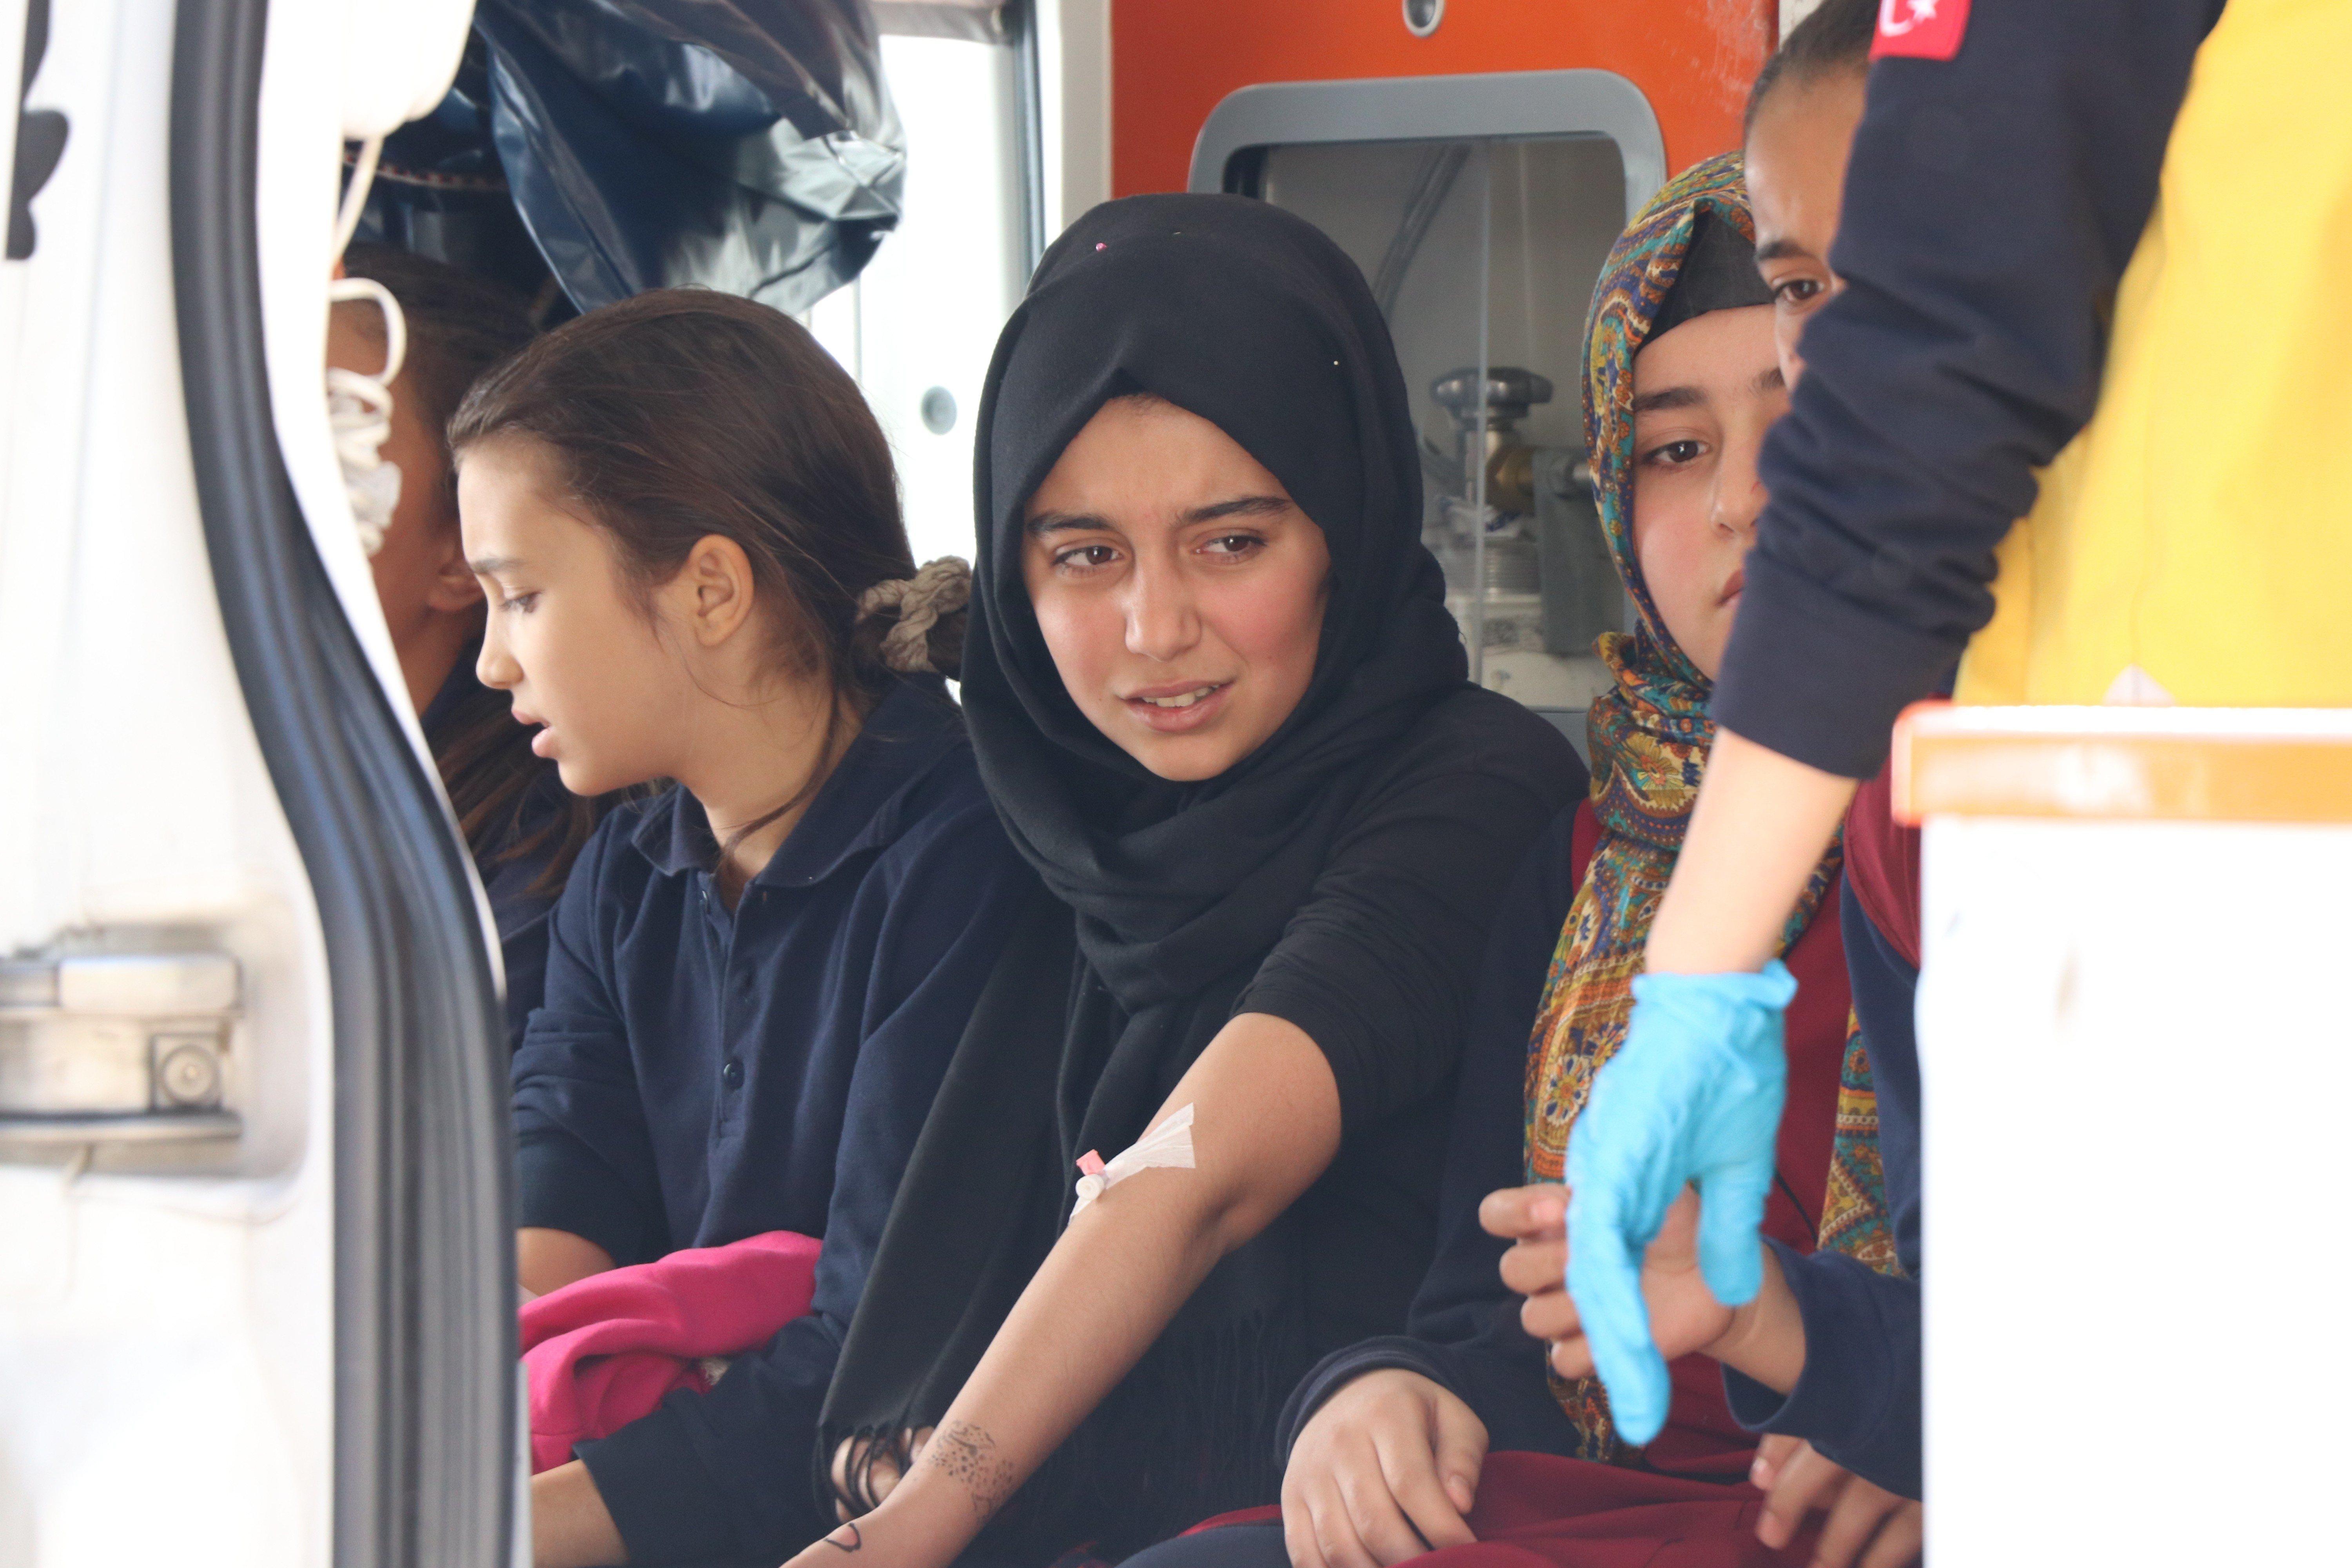 Konya’da 29 öğrenci içtikleri sudan hastanelik oldu